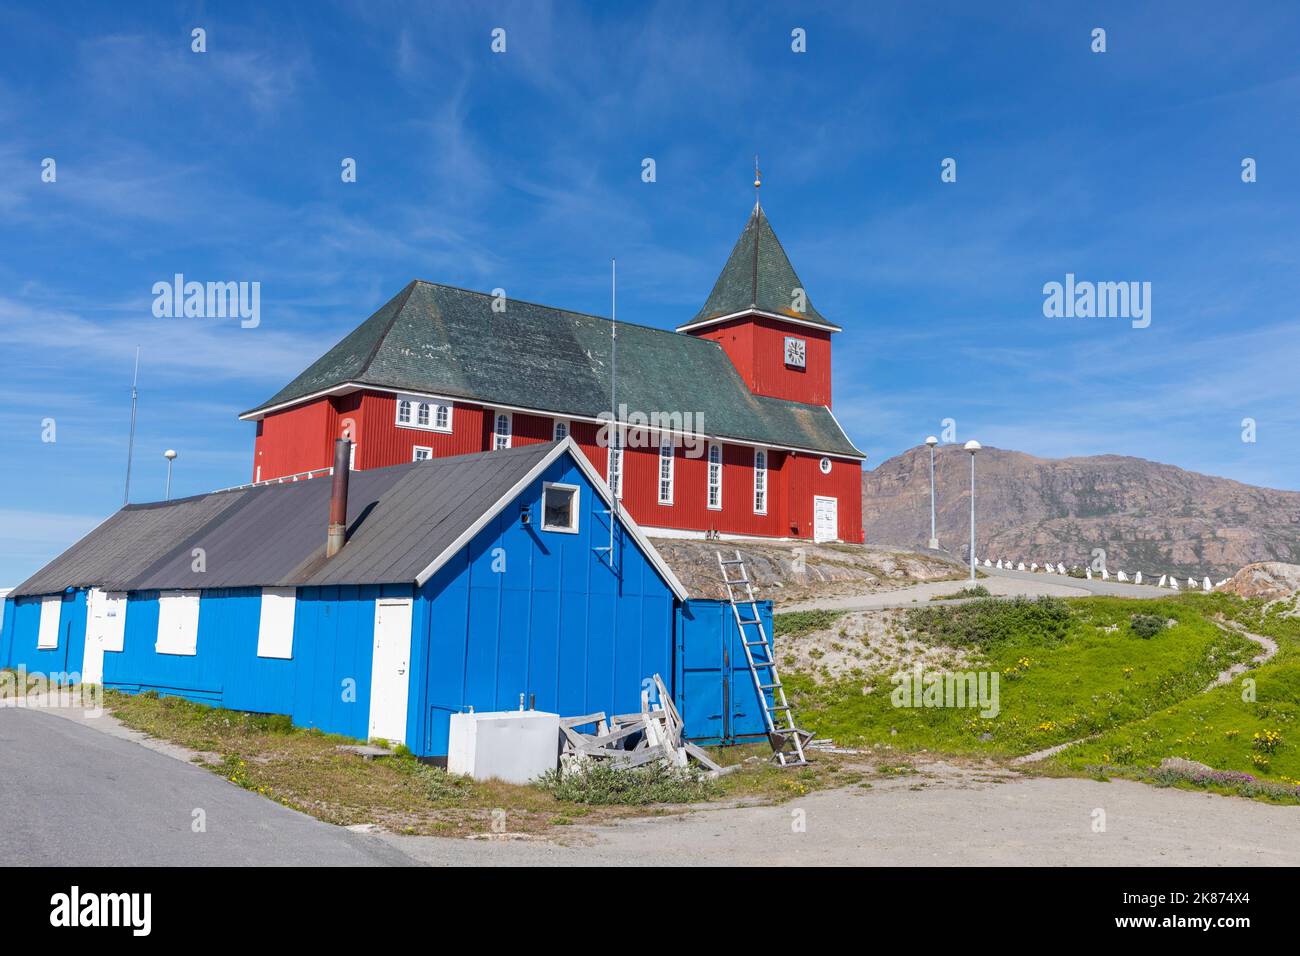 Vue extérieure de la nouvelle église, construite en 1926, dans le centre-ville de Sisimiut, Groenland, Danemark, régions polaires Banque D'Images